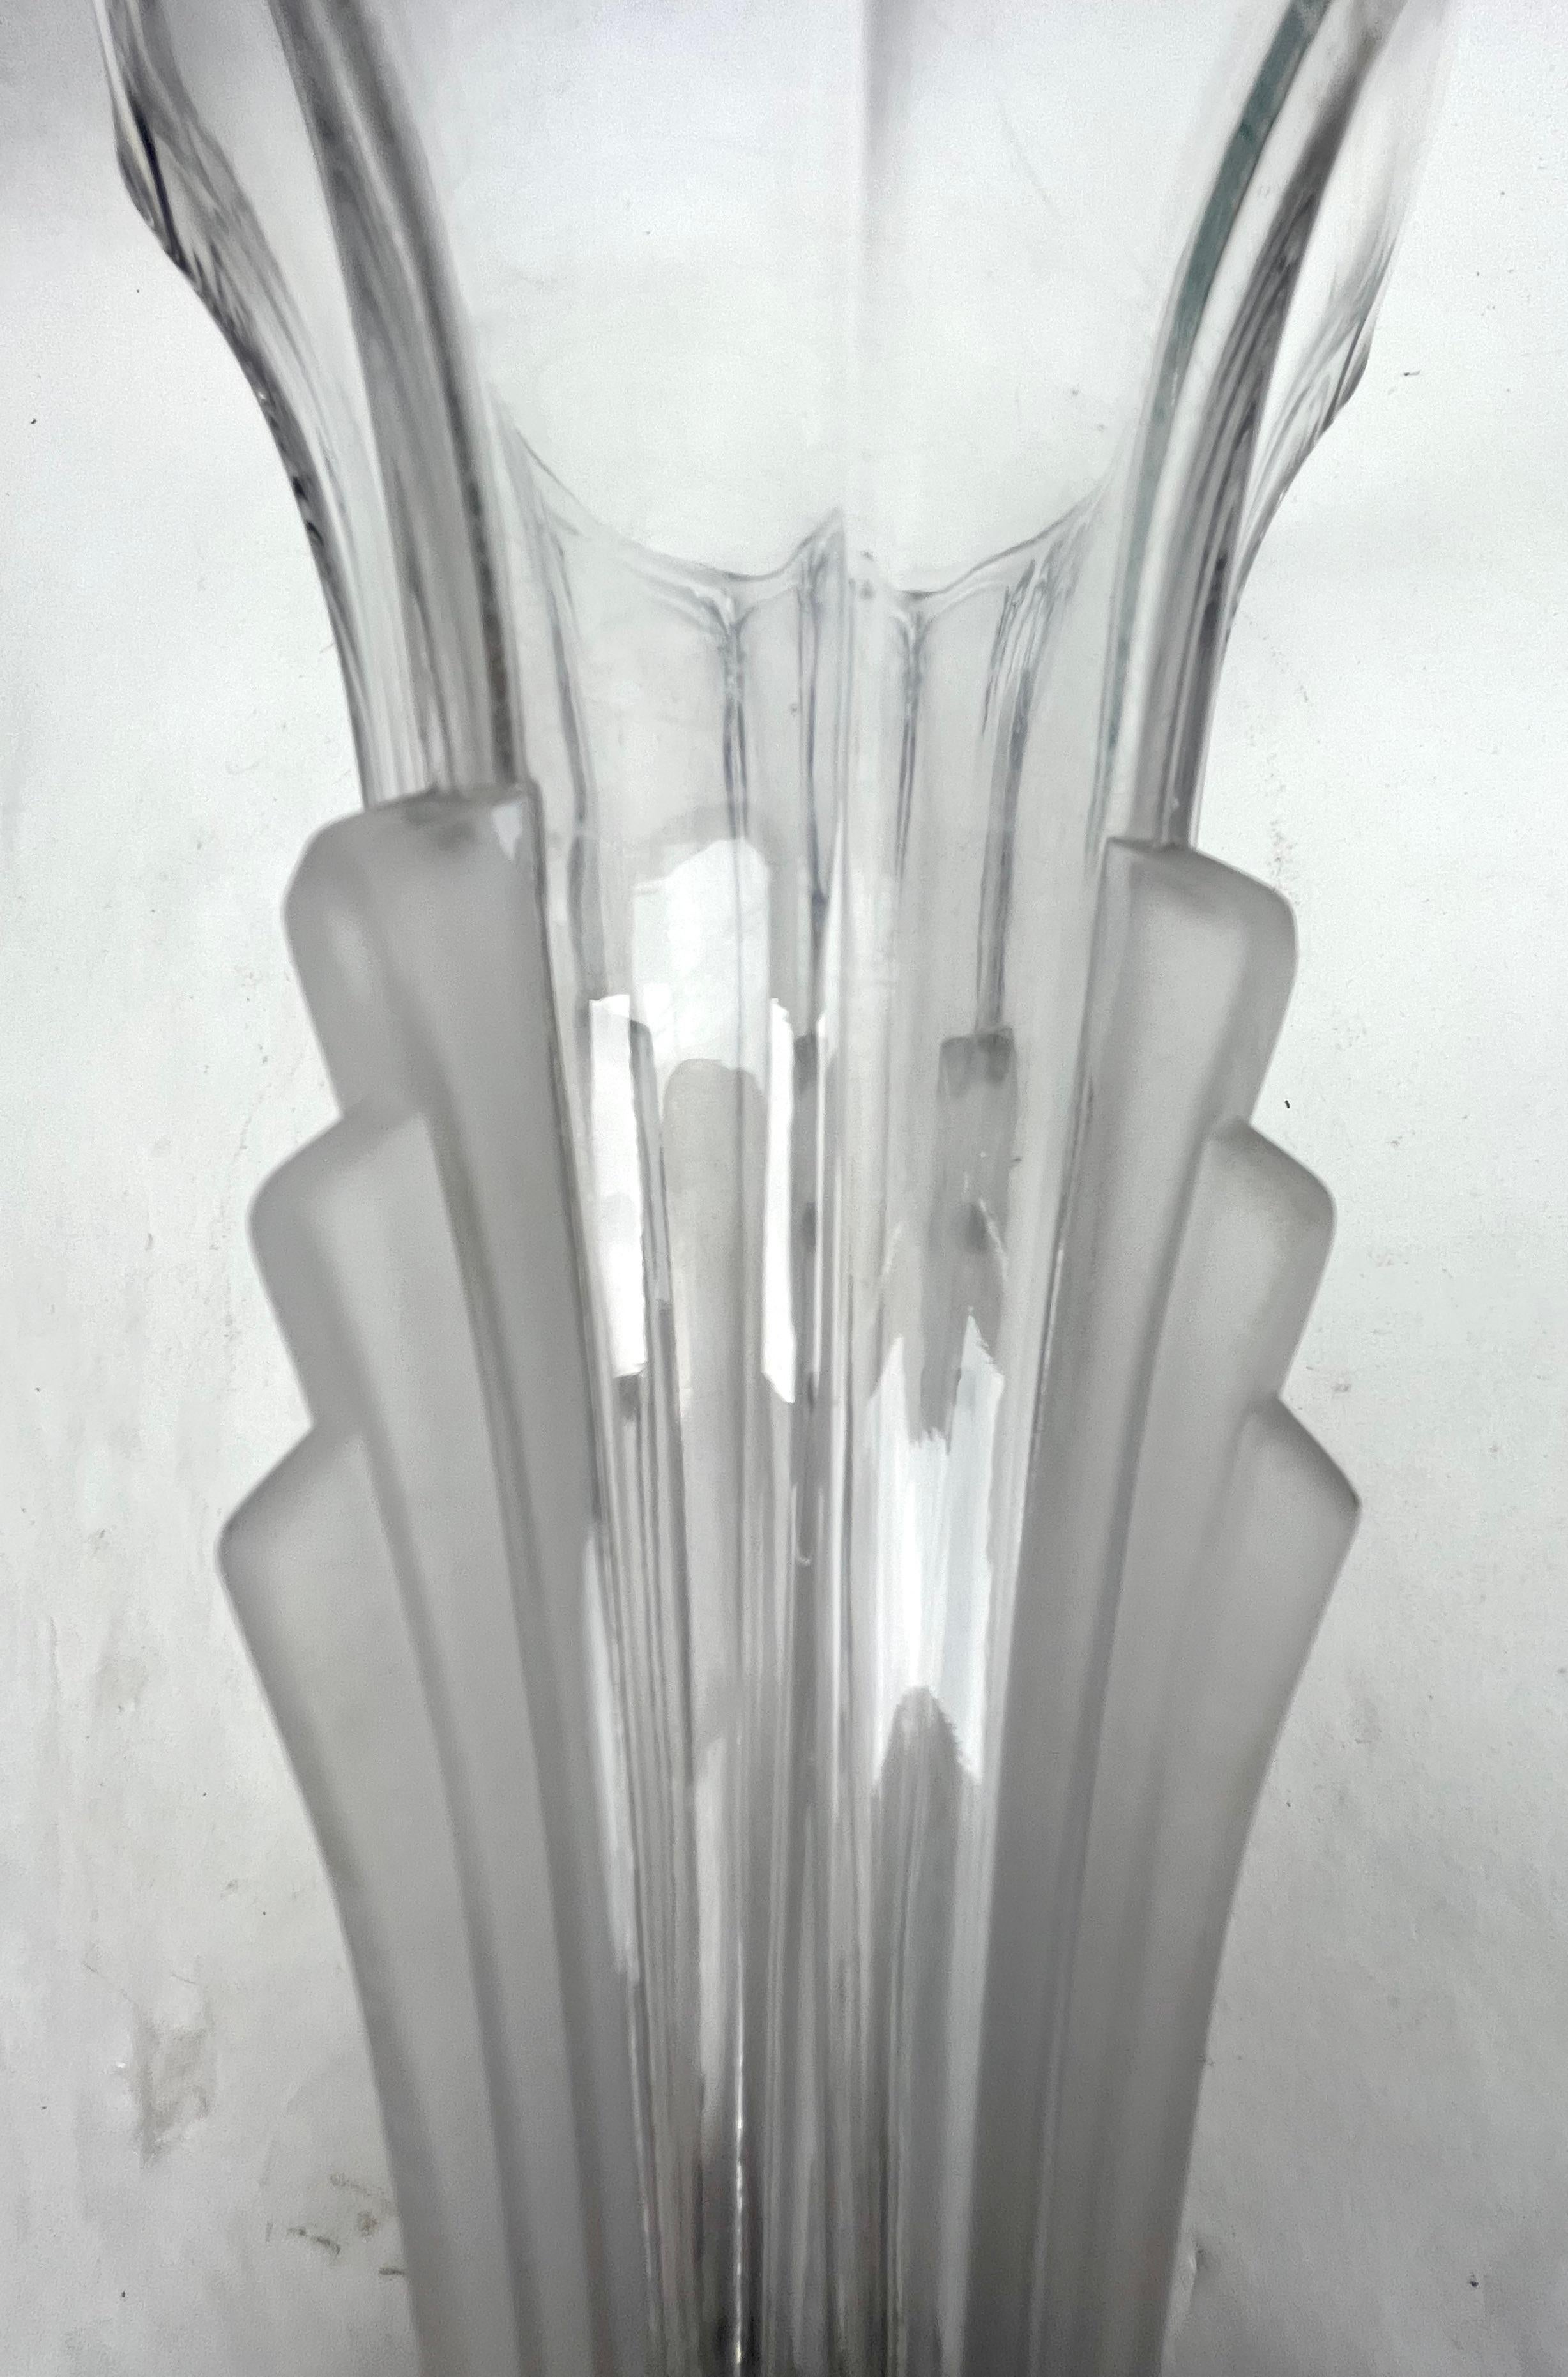 Art Deco Vase aus geformtem Glas, Tschechoslowakei 1930er Jahre

Art-Déco-Vase aus geformtem Glas aus den 1930er Jahren 
Eine hervorragende, gut gemachte Vase aus Pressglas, die in der Tschechoslowakei hergestellt wurde. 
Eine sehr art-déco-artige